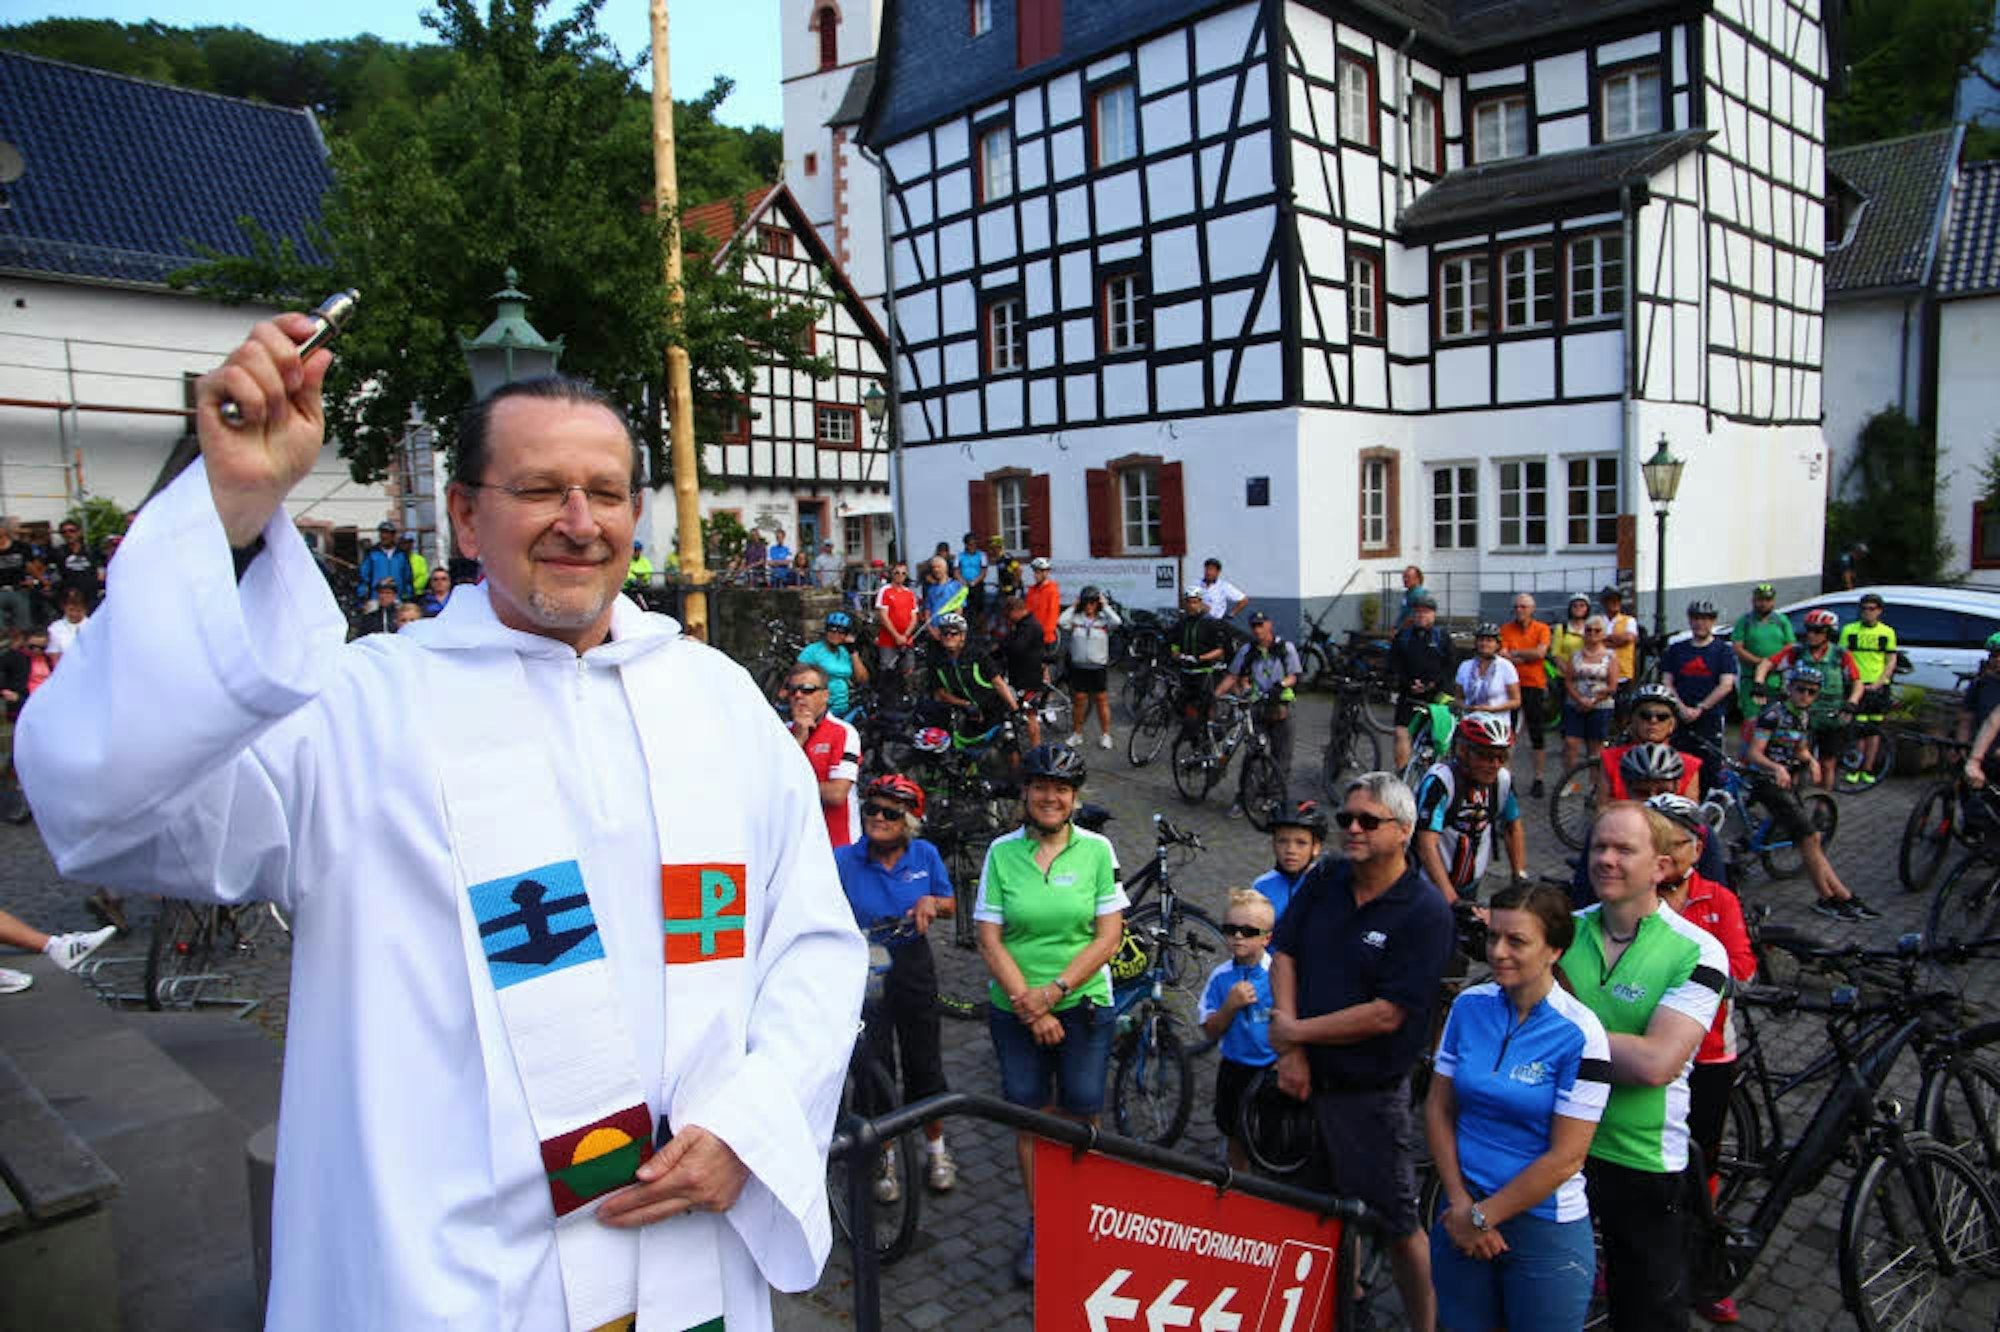 Pfarrer Matthäus Zuska erteilte den Radfahrern auf dem Curtius-Schulten-Platz in Blankenheim den Segen, bevor diese sich auf den Weg durch das malerische Ahrtal machten.